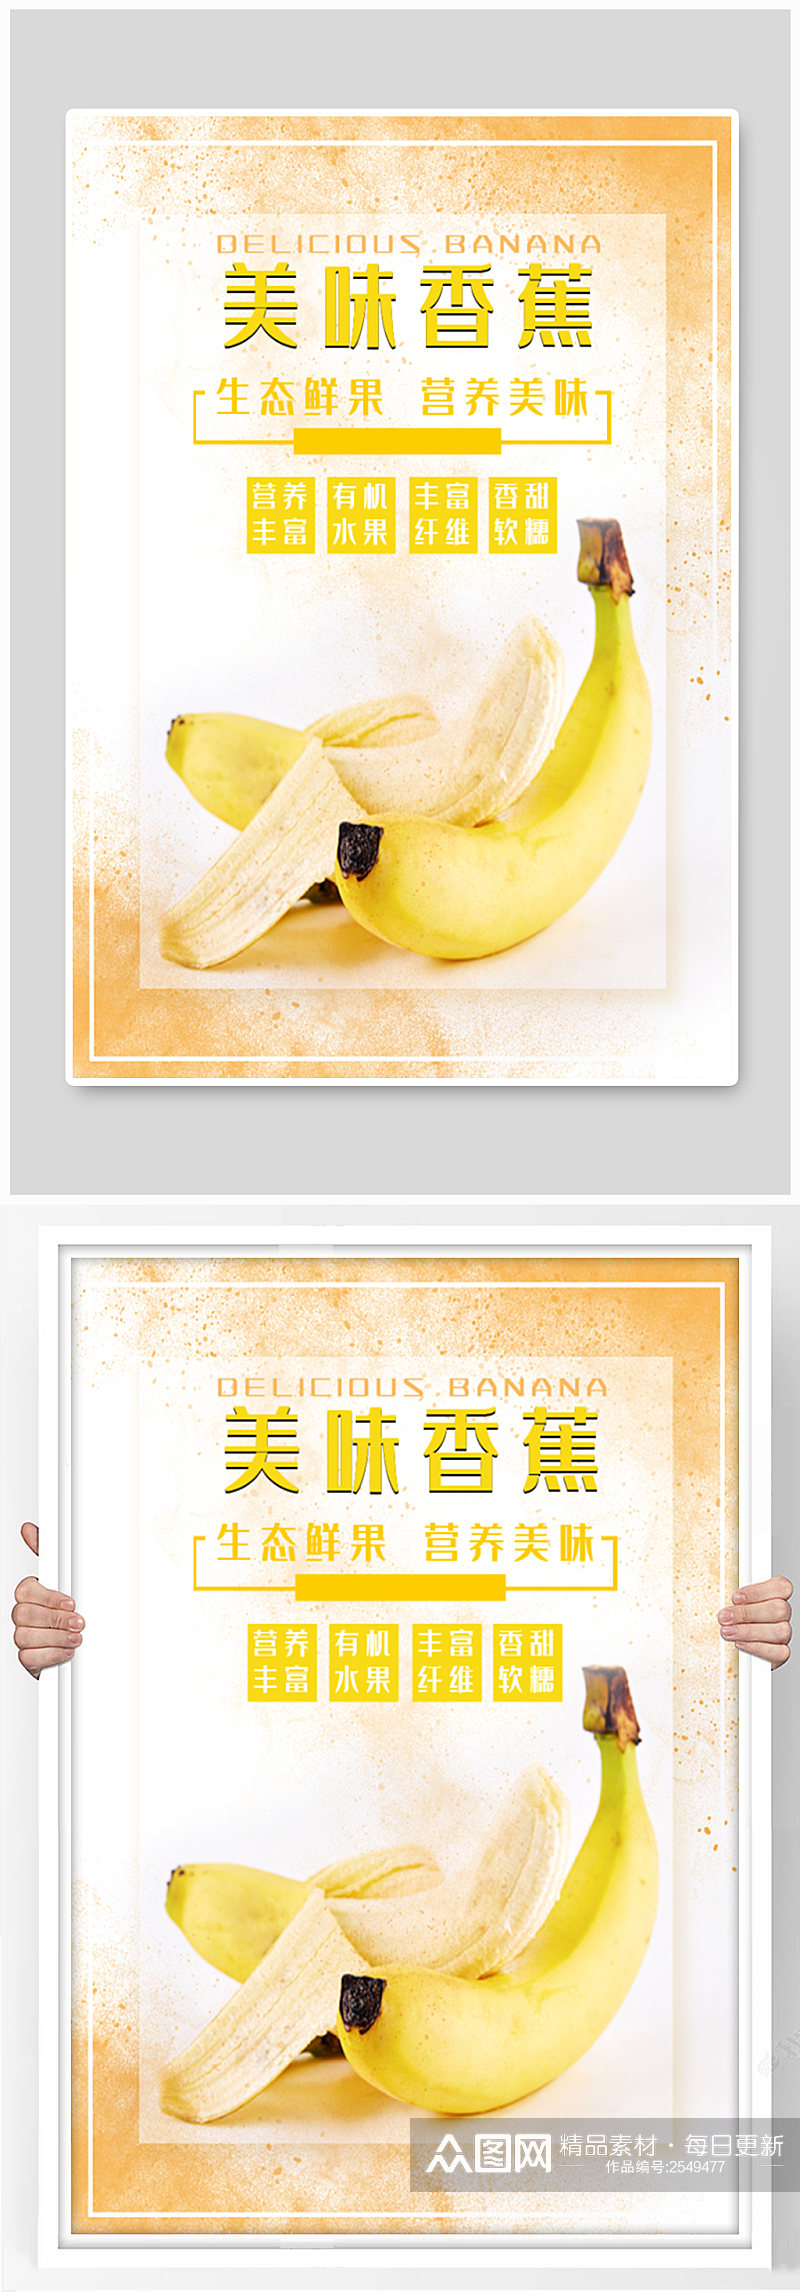 生态营养美味香蕉海报素材